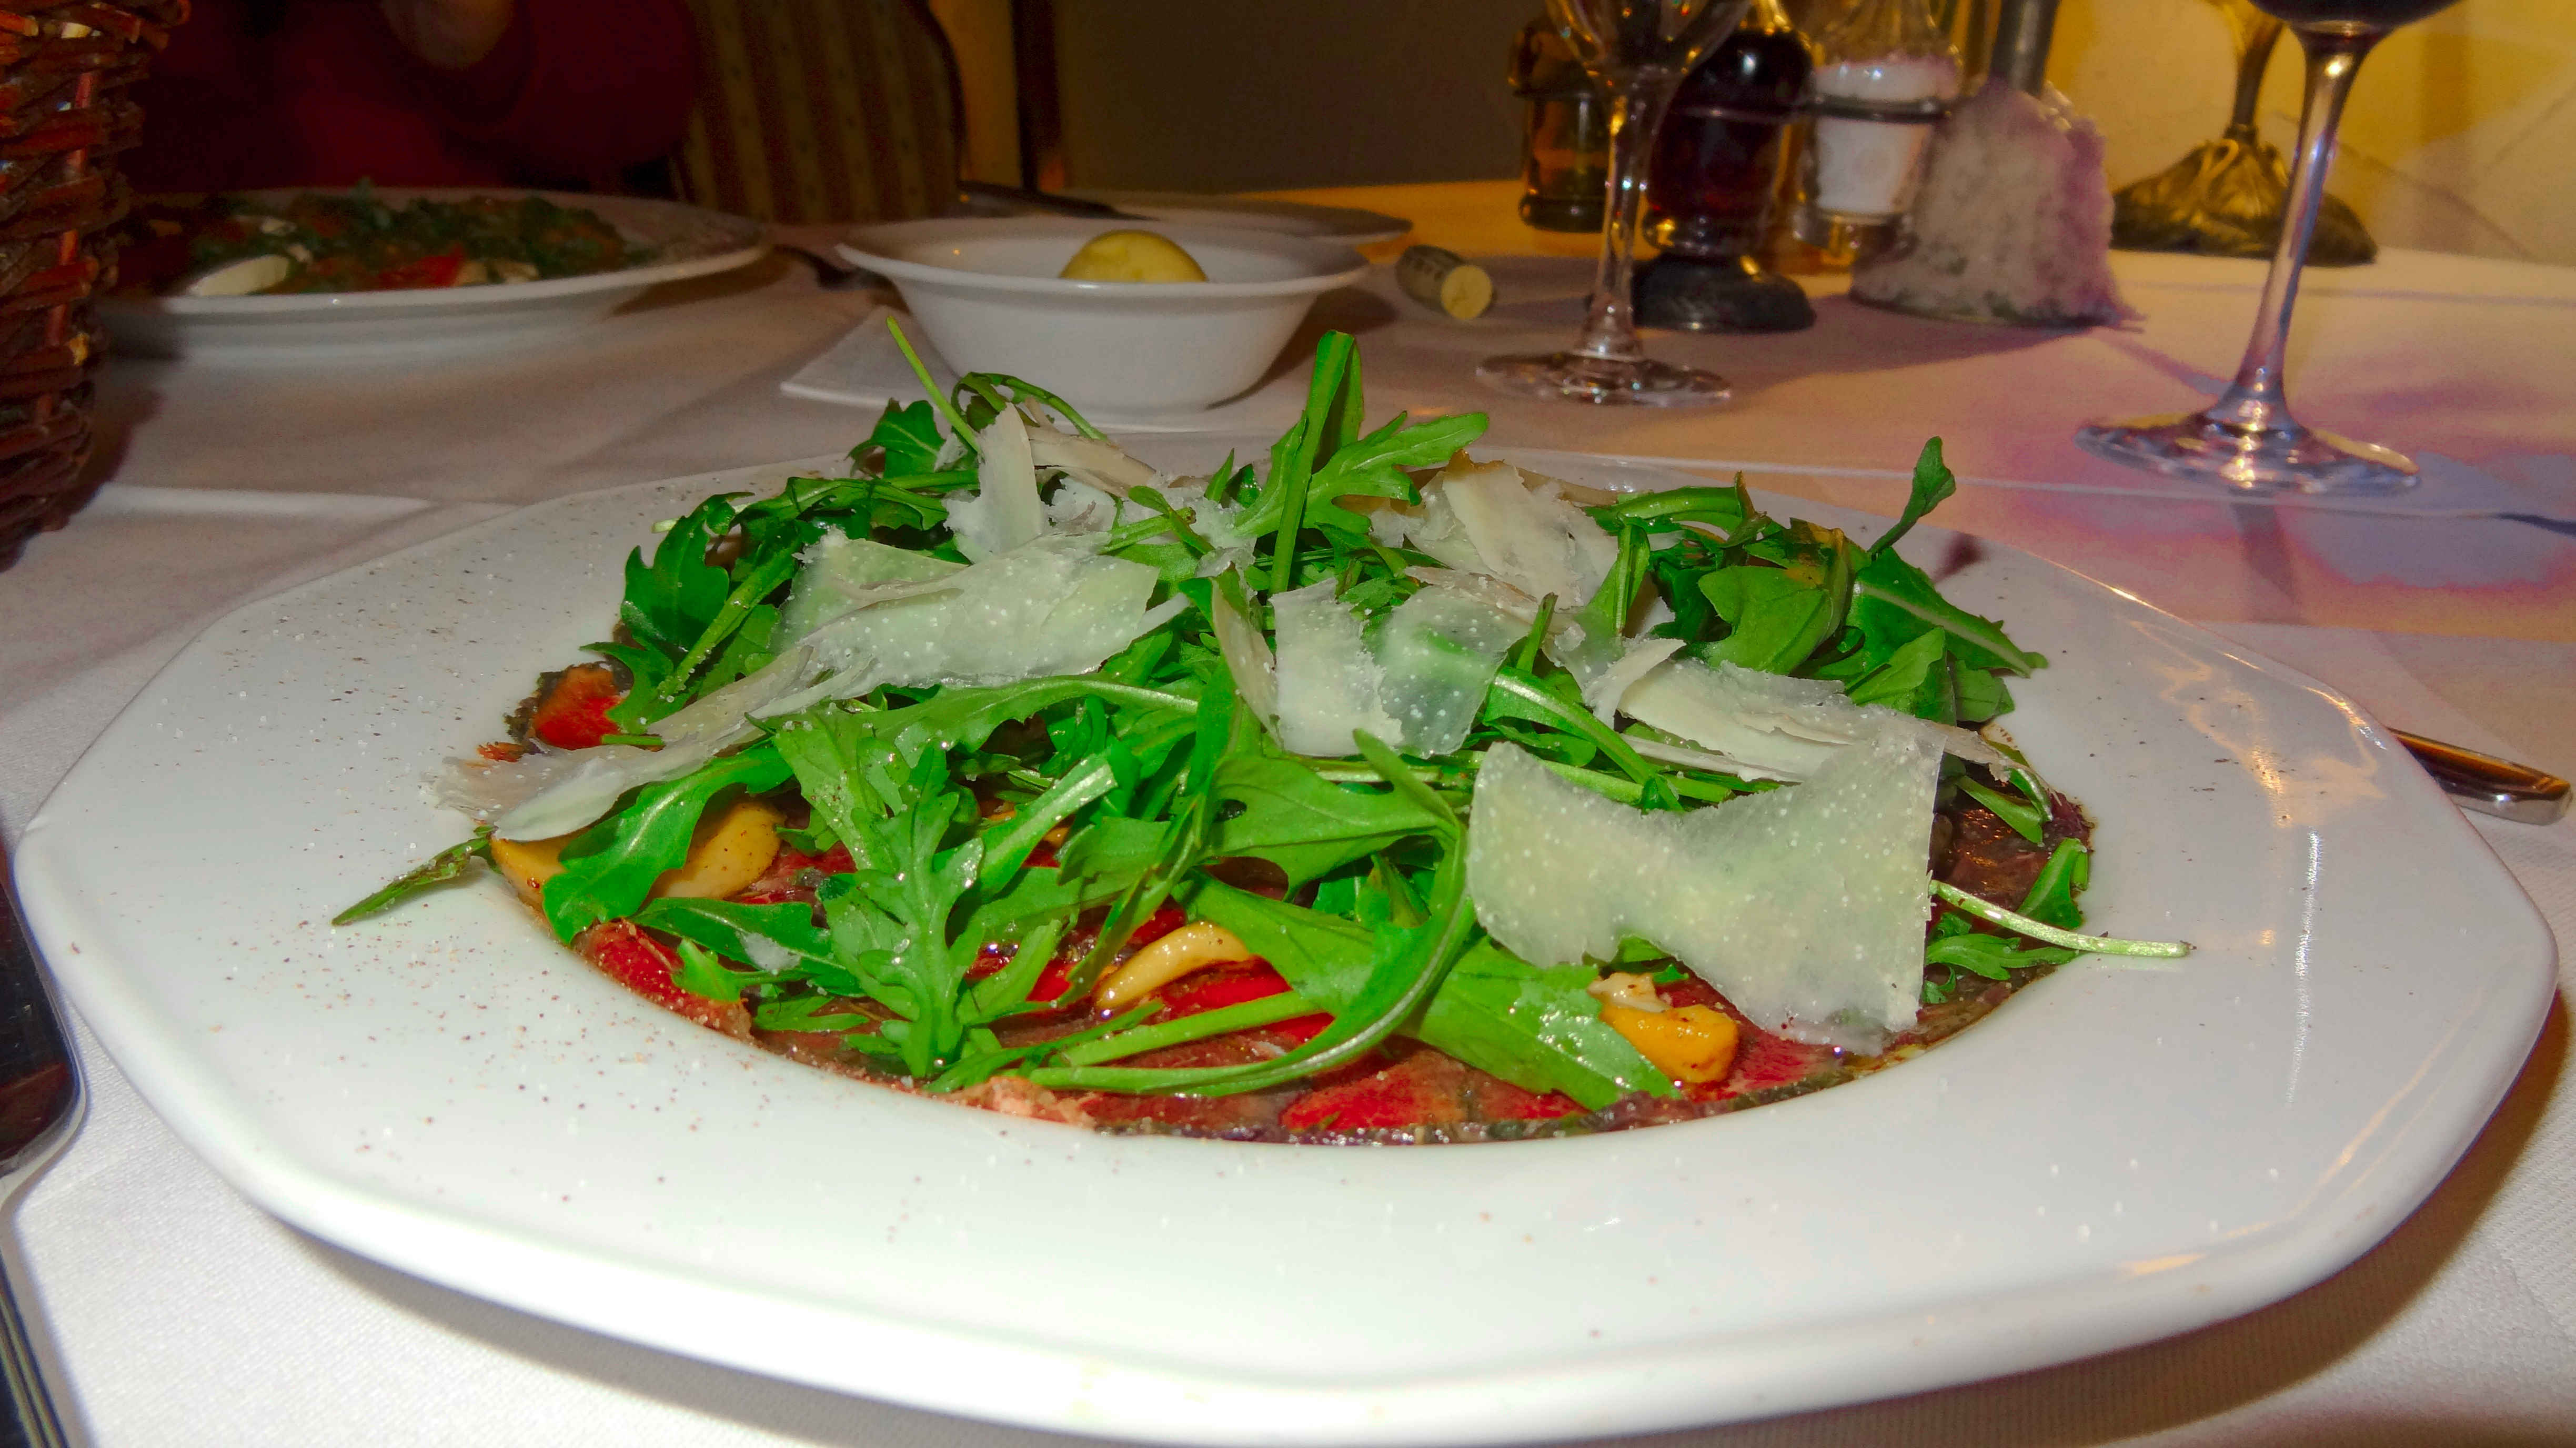 restauracja włoska we wrocławiu kolacja we włoskim stylu angellovesdreams polędwica carpaccio z jelenia